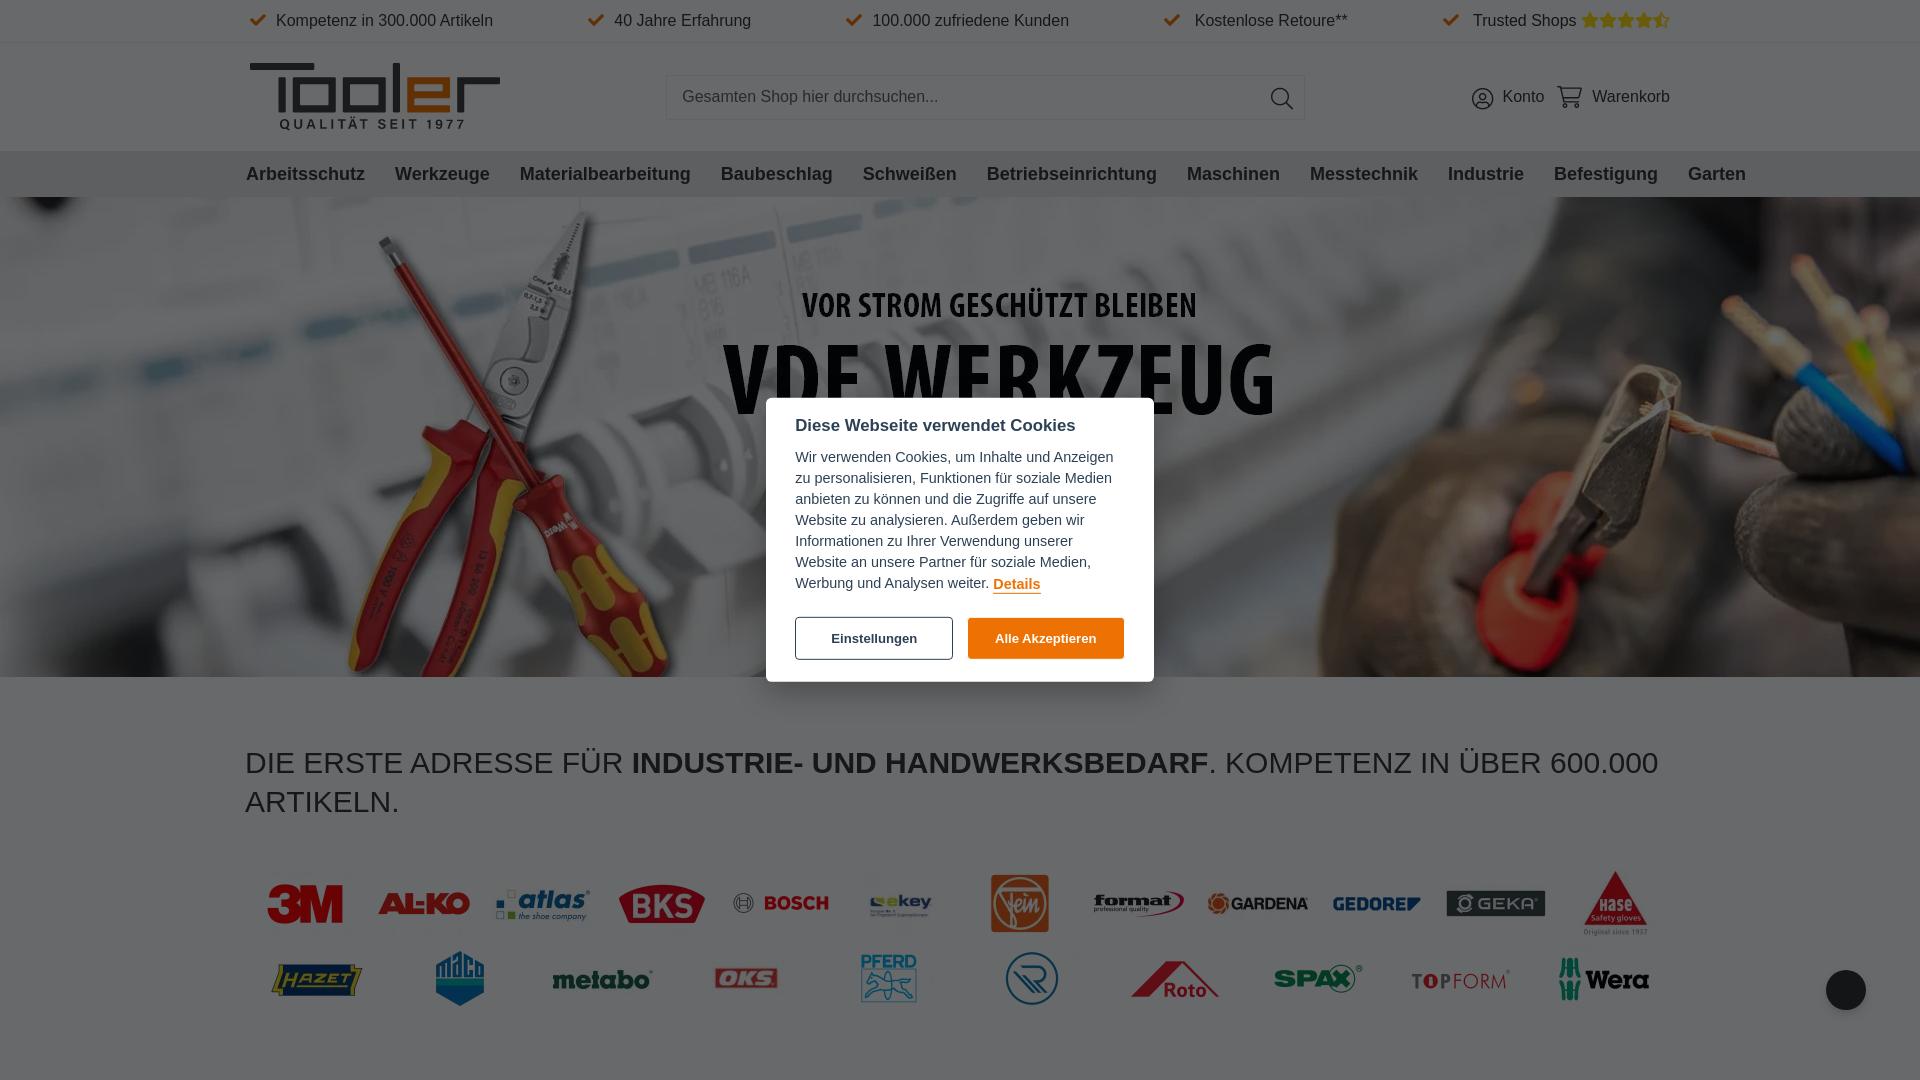 Website User Bewertung zu www.tooler.de